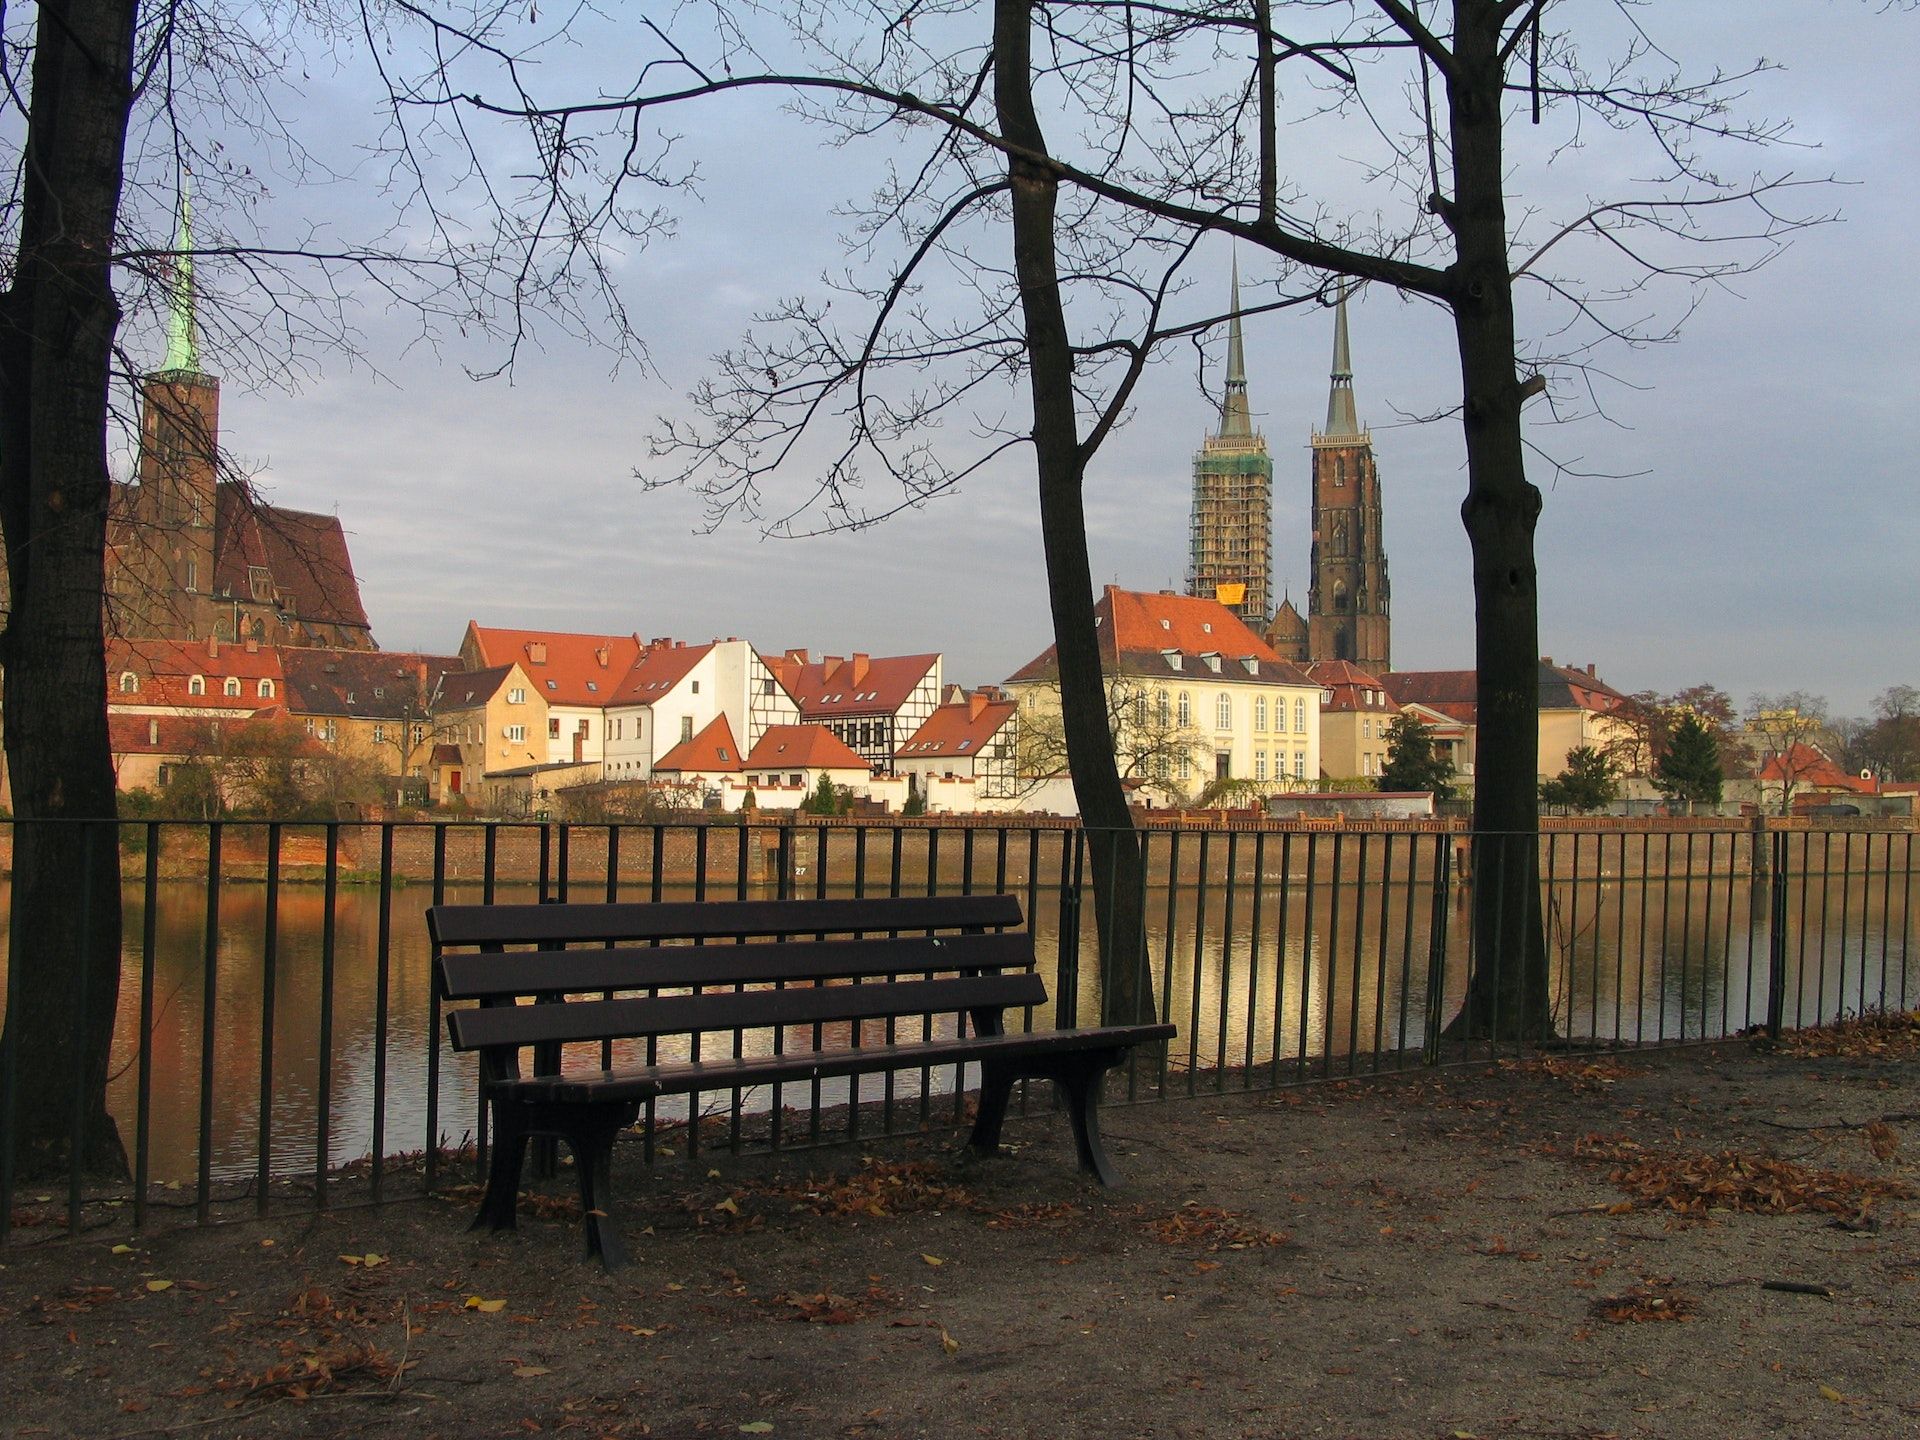 Wybierasz się do Wrocławia? Poznaj listę najlepszych atrakcji i zabytków